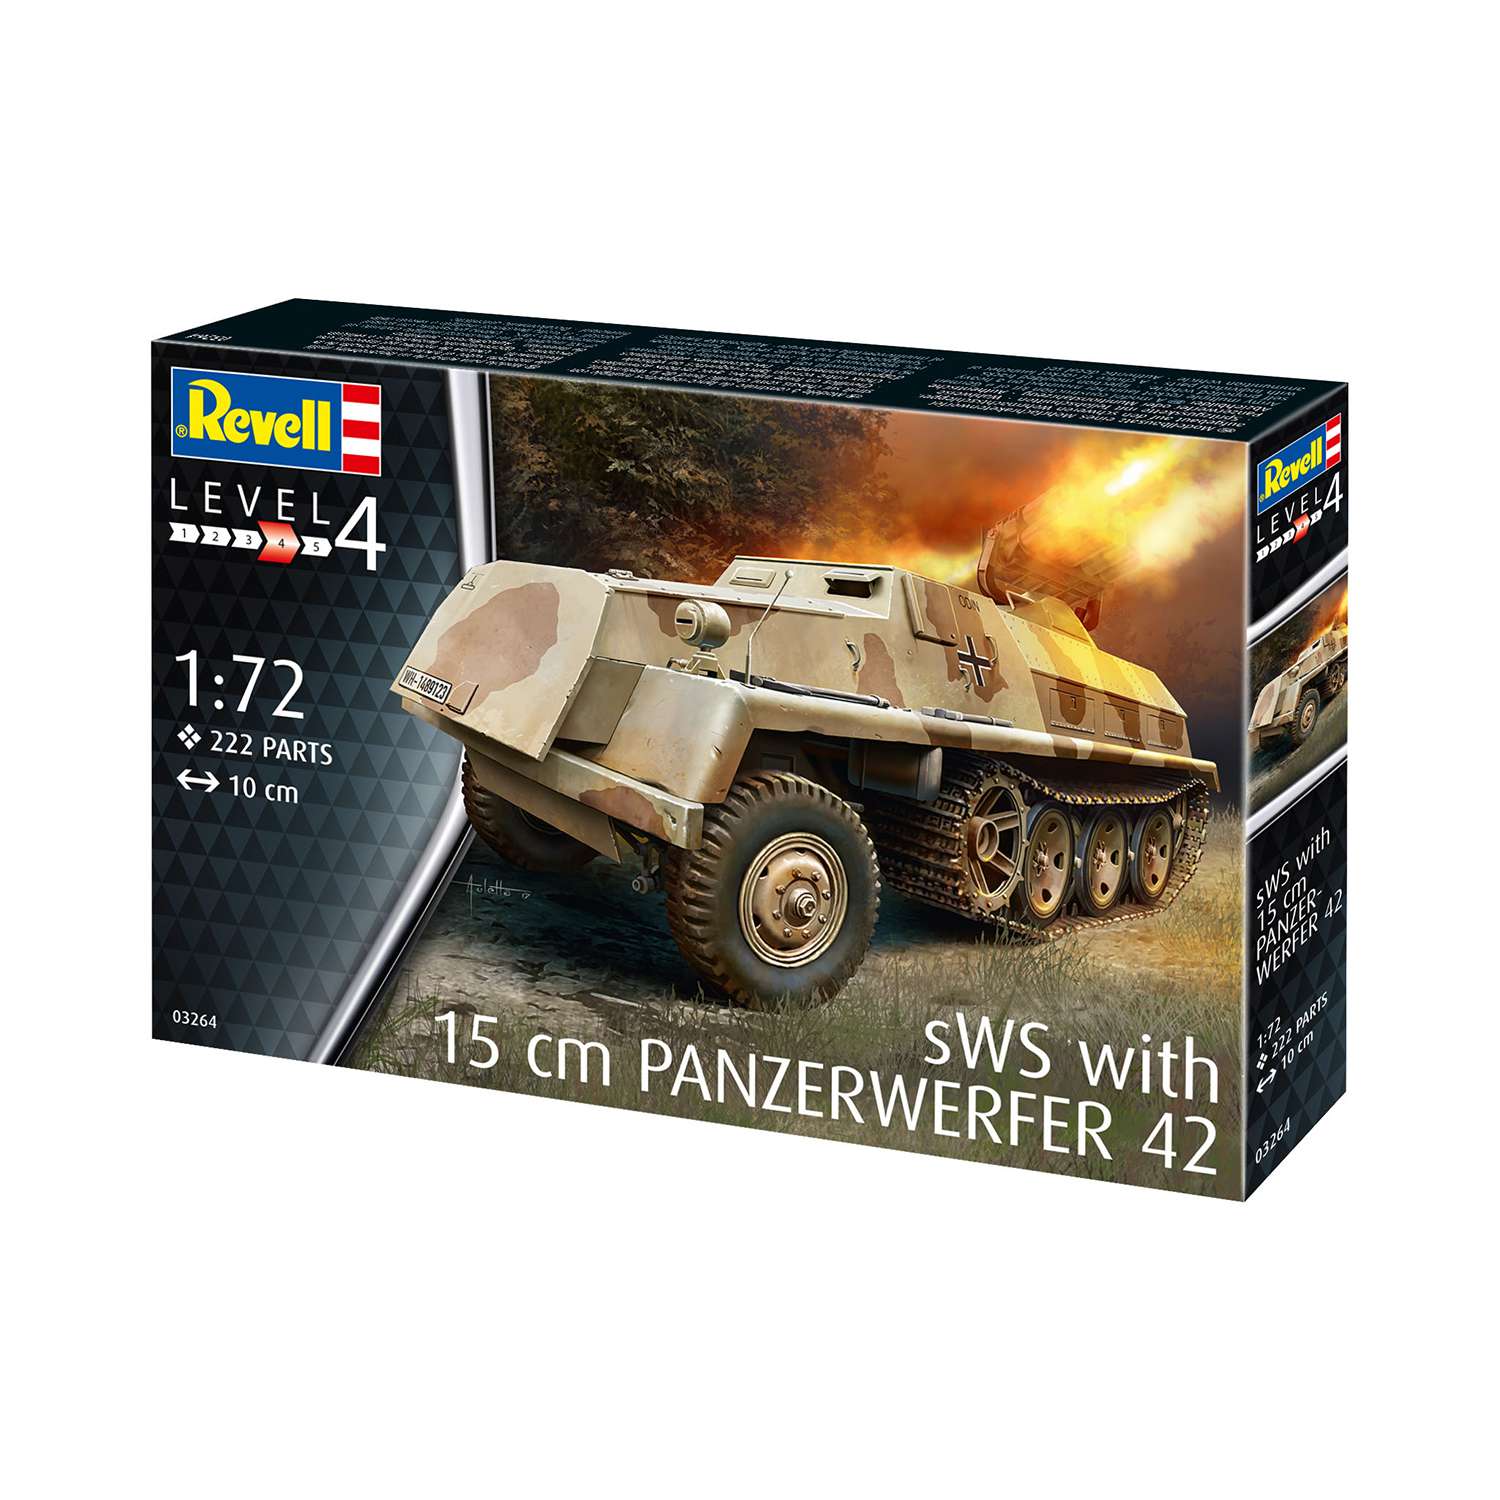 Сборная модель Revell Германская самоходная РСЗО периода Второй мировой войны Panzerwerfer 42 auf sWS 03264 - фото 3